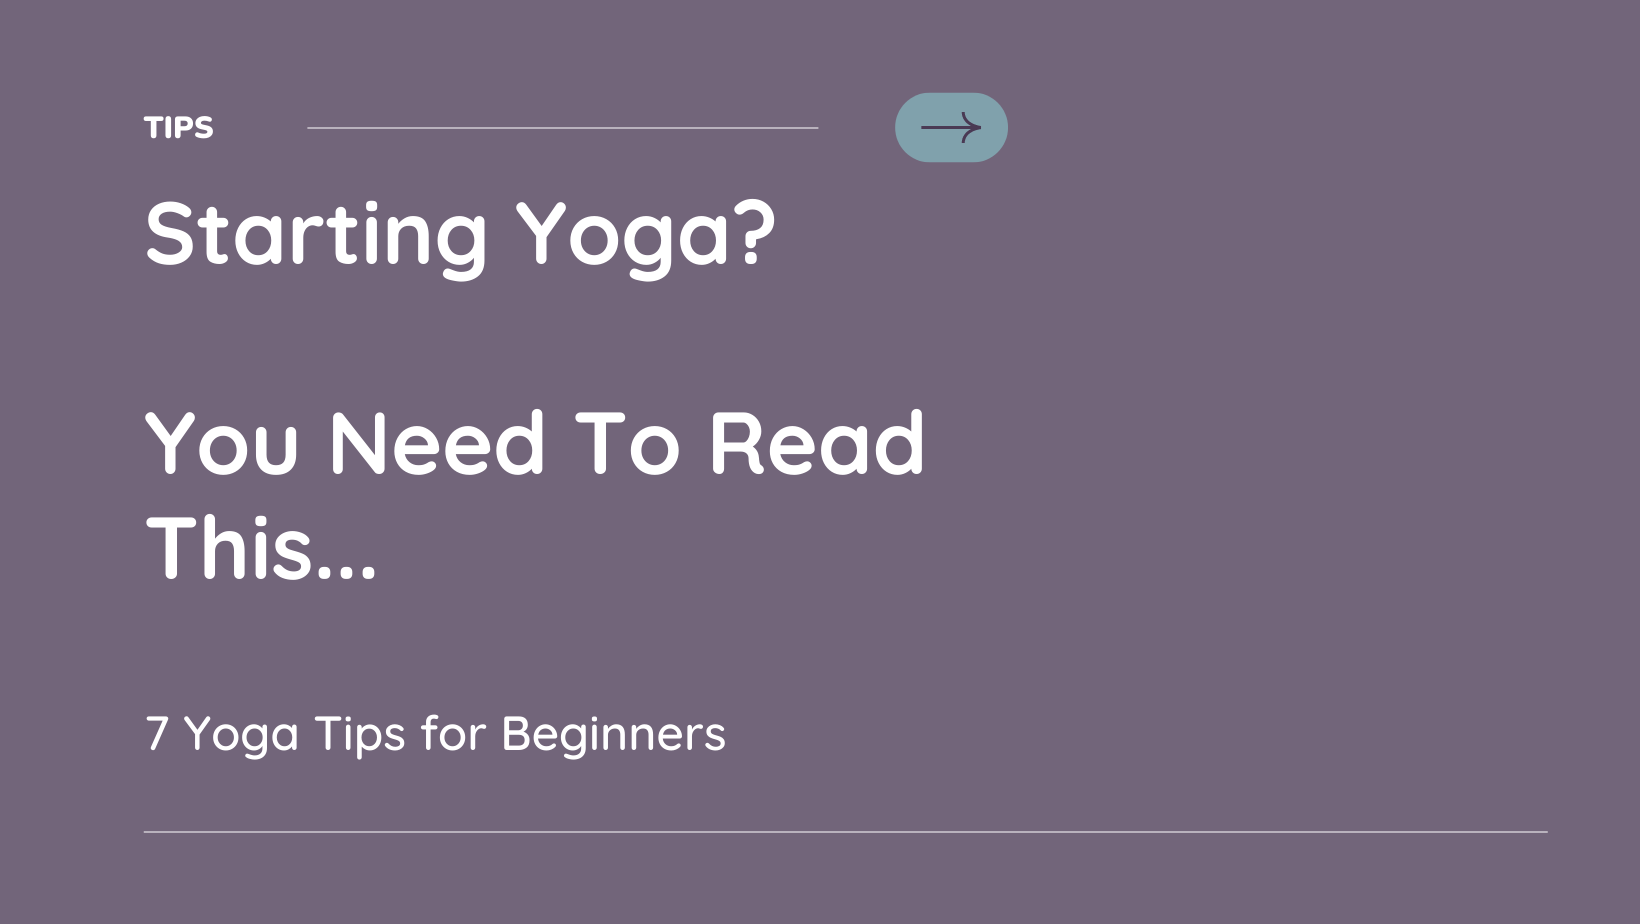 7 Yoga Tips For Beginners